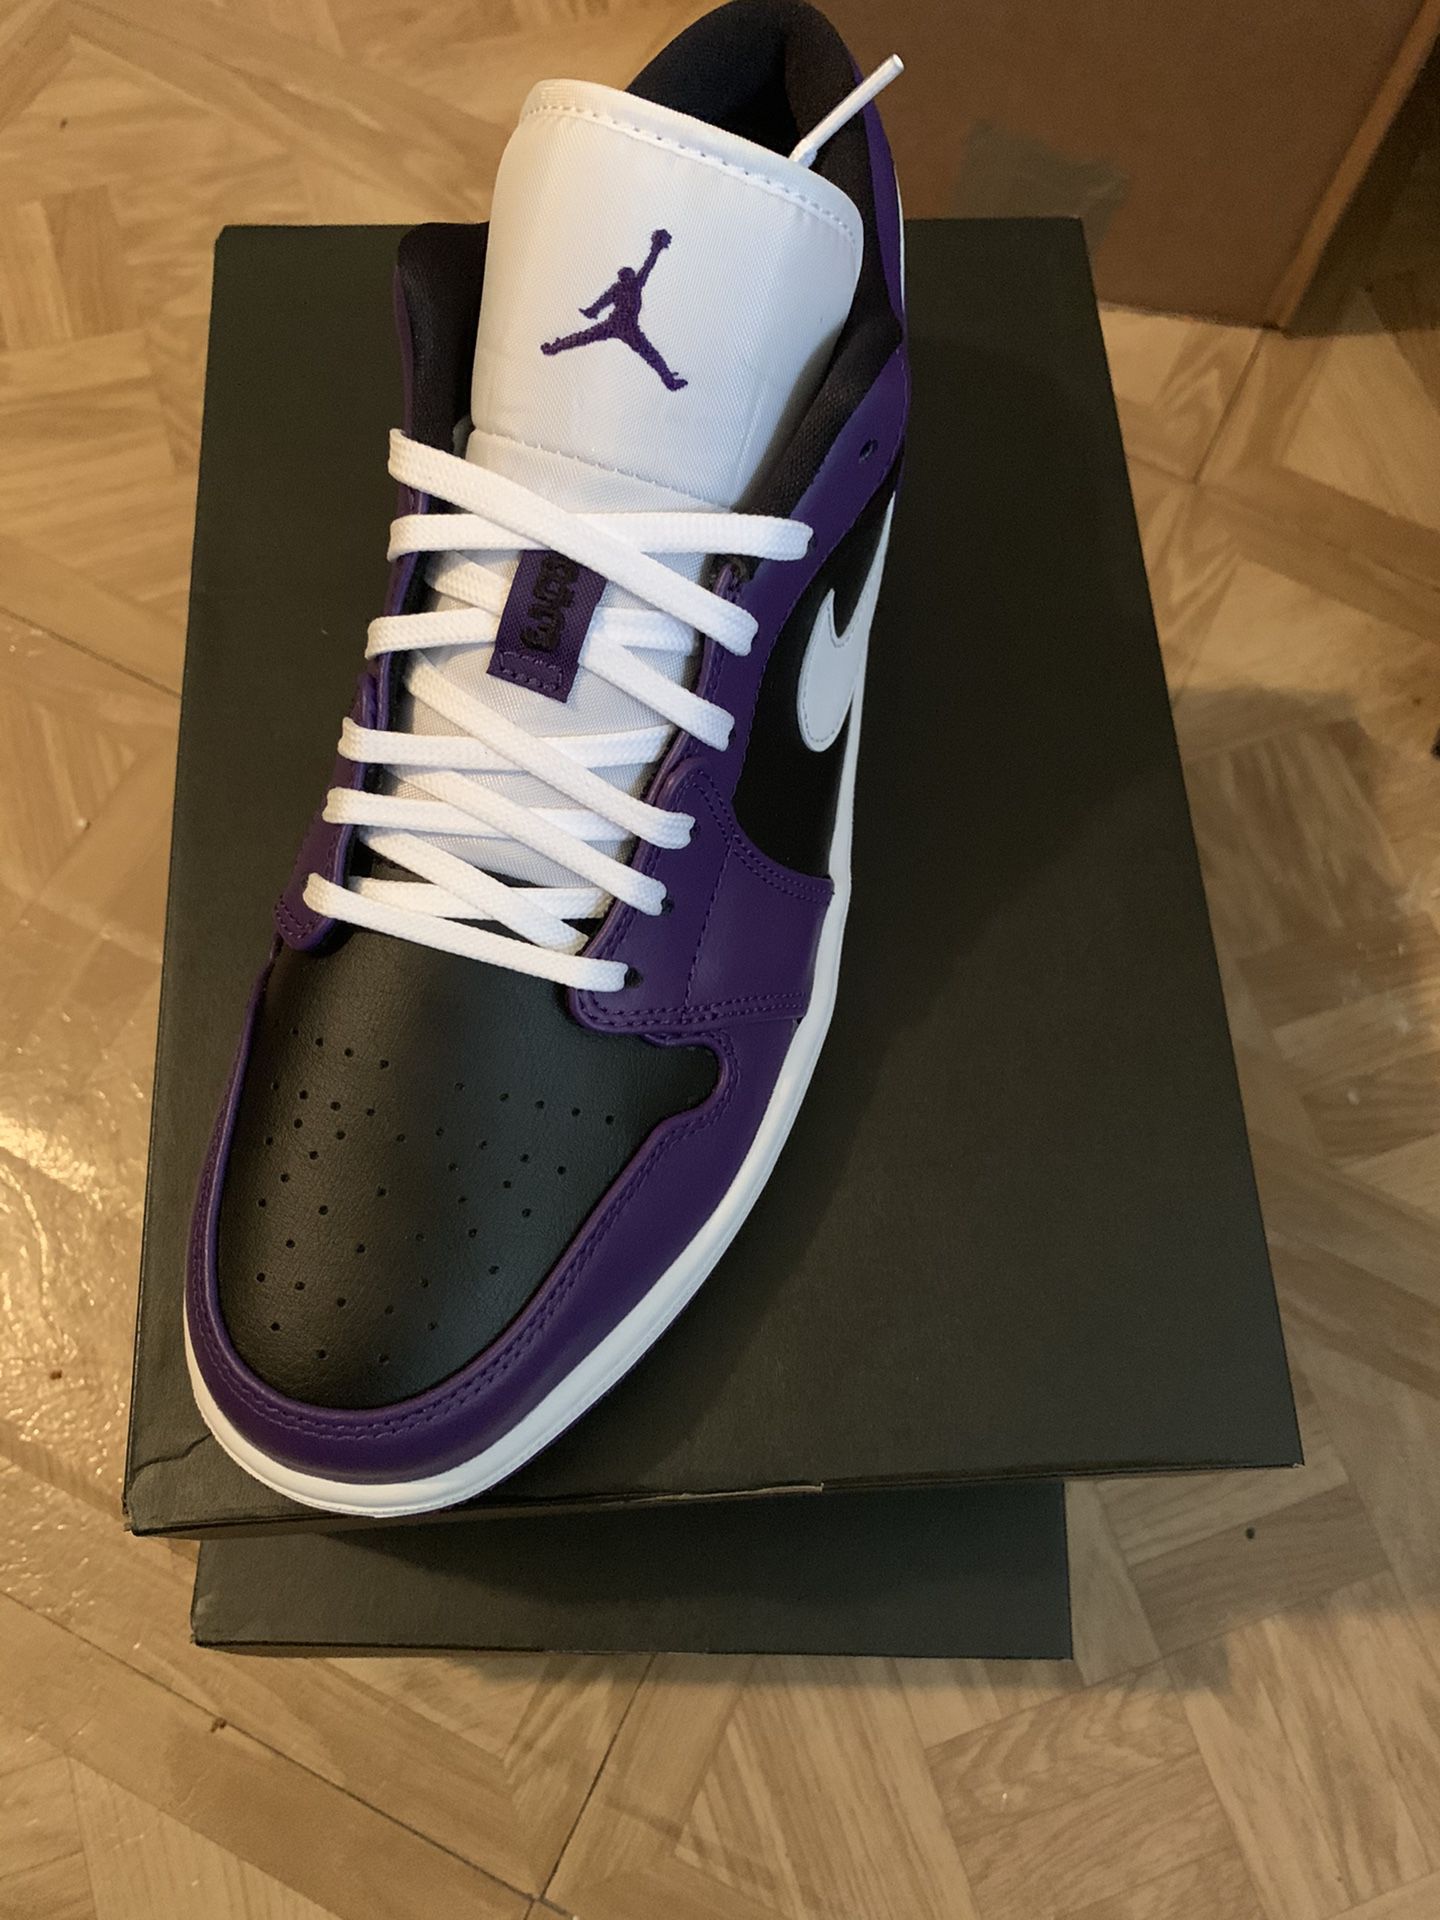 Air Jordan 1 Low “Court Purple” size 10